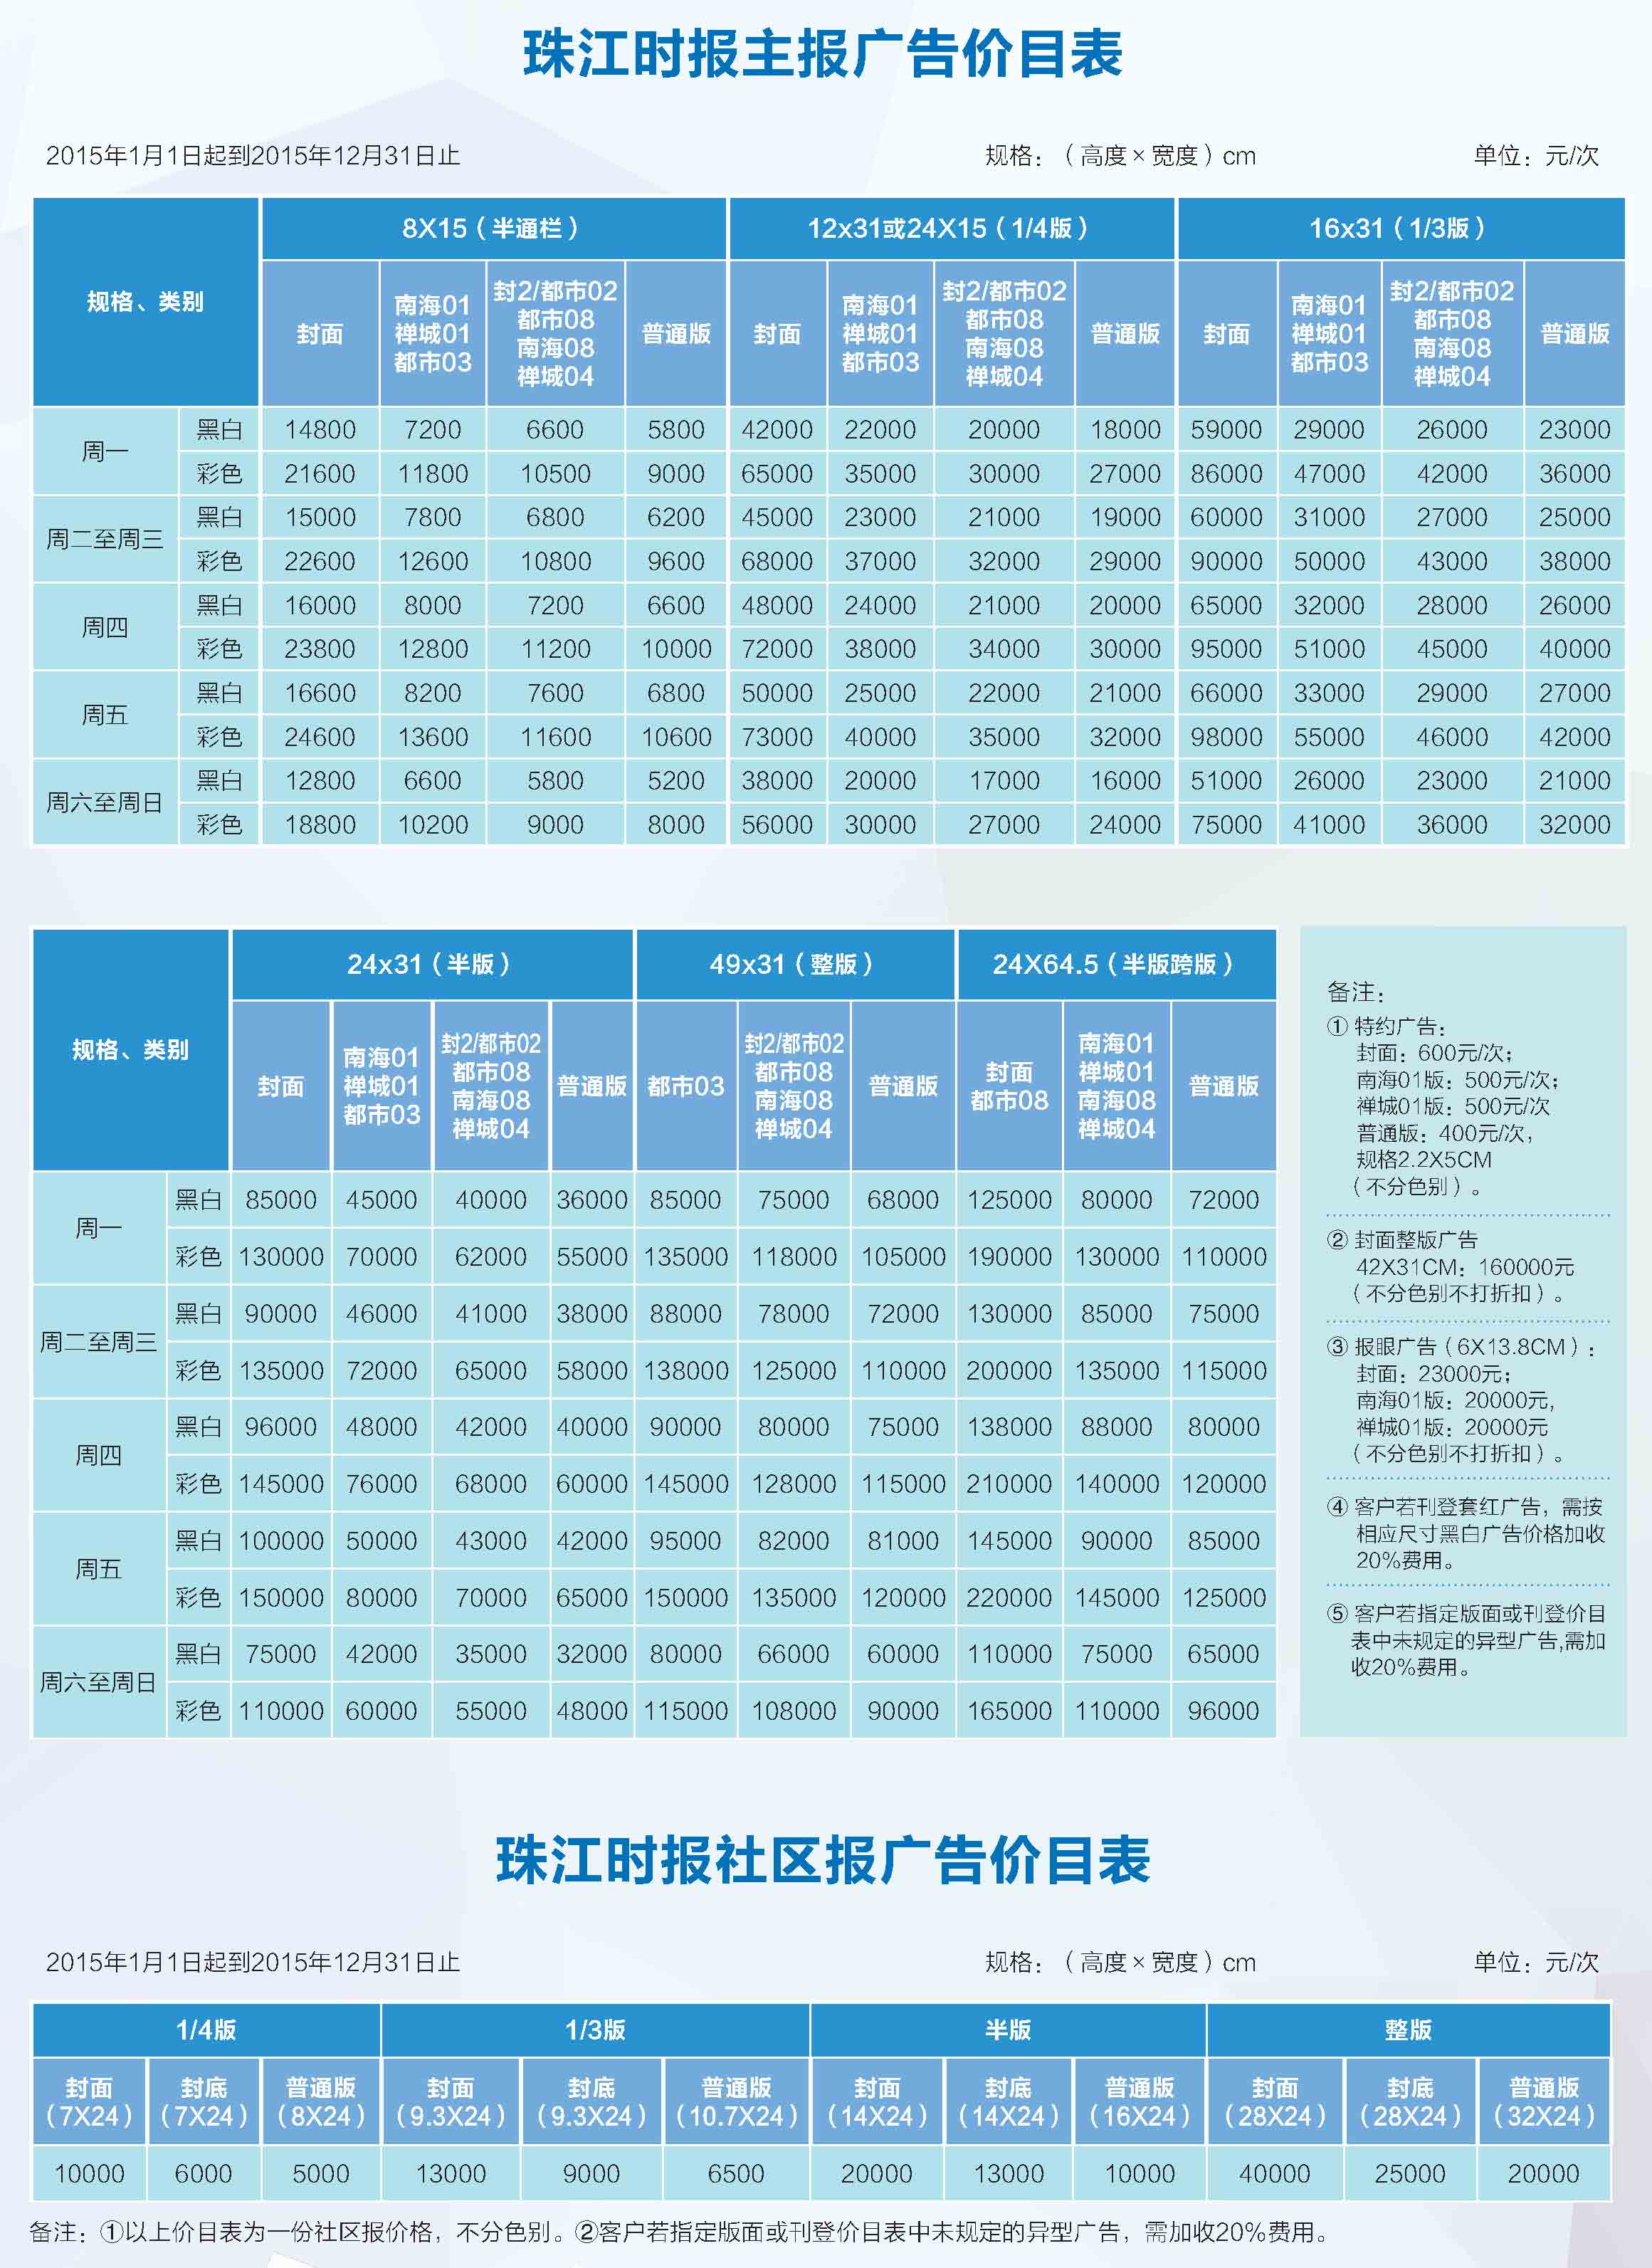 《珠江时报》2015年广告价格